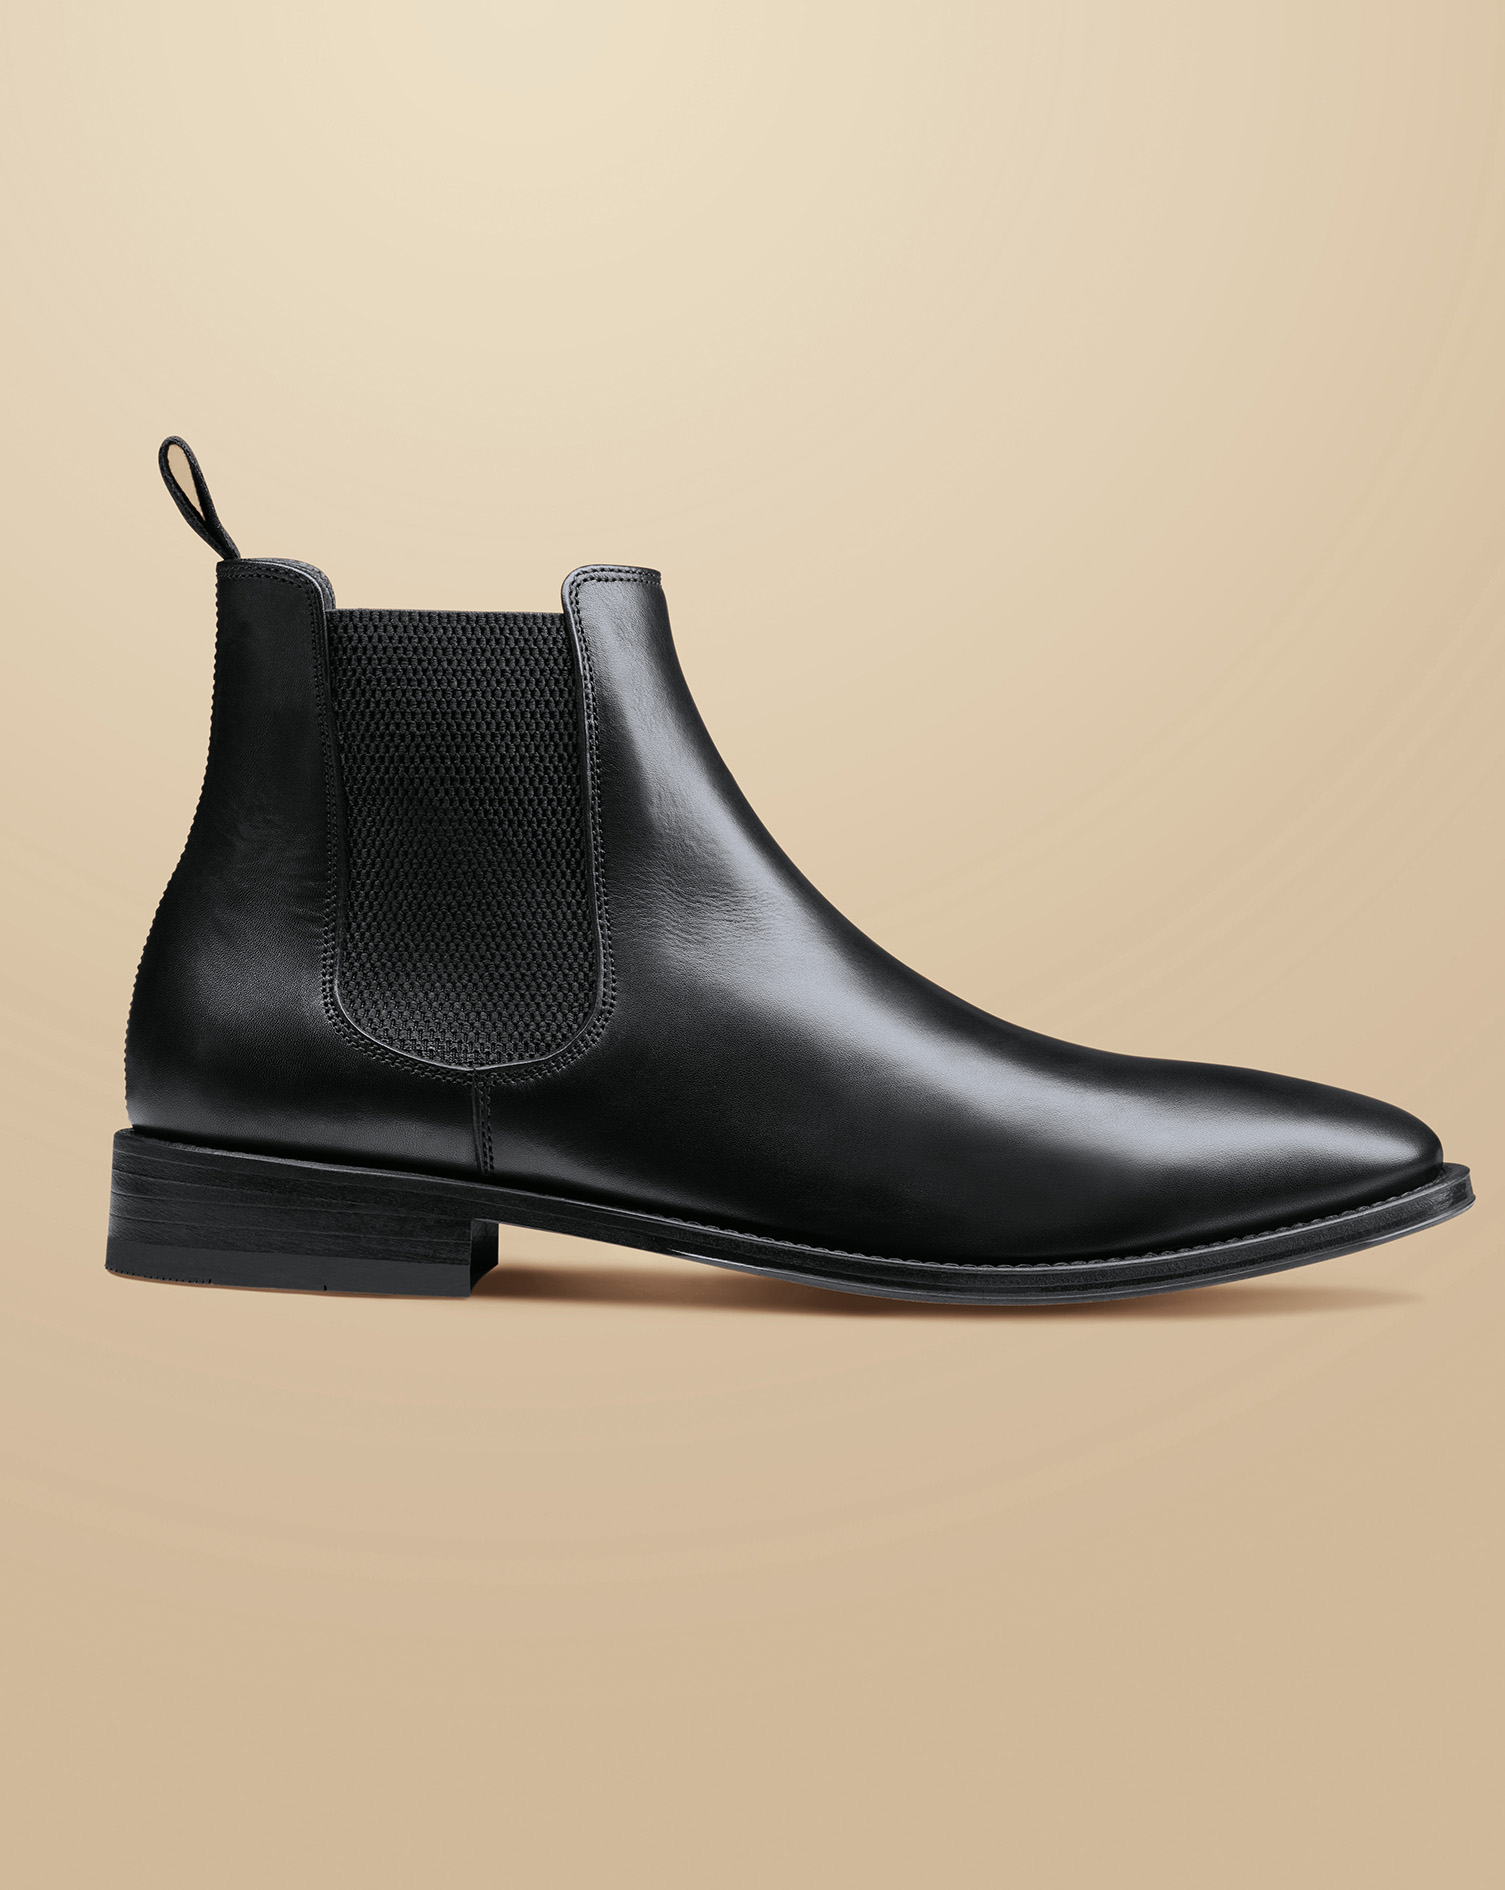 Men's Charles Tyrwhitt Leather Chelsea Boots - Black Size 12
